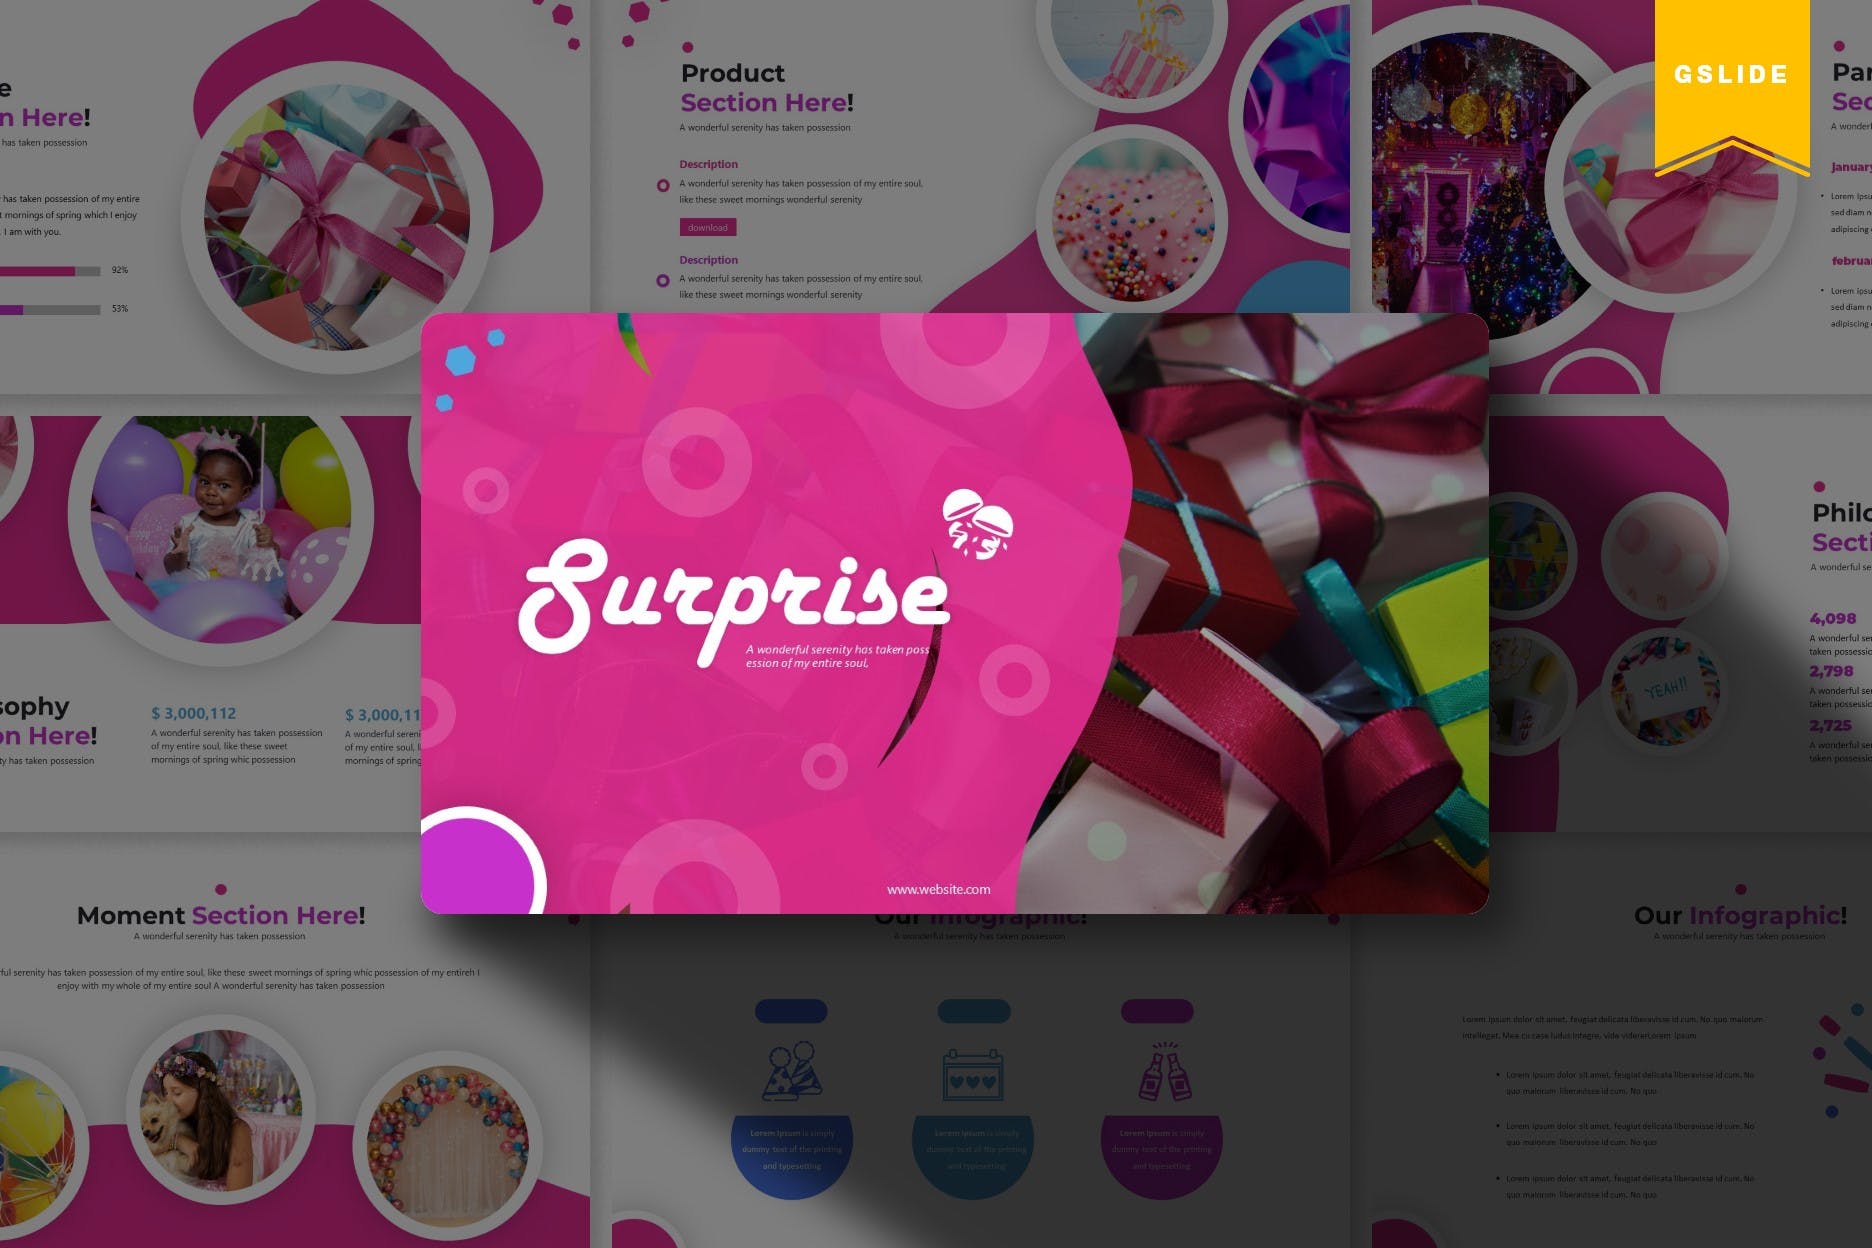 生日派对节日主题方案策划素材库精选谷歌演示模板 Sureprise | Google Slides Template插图